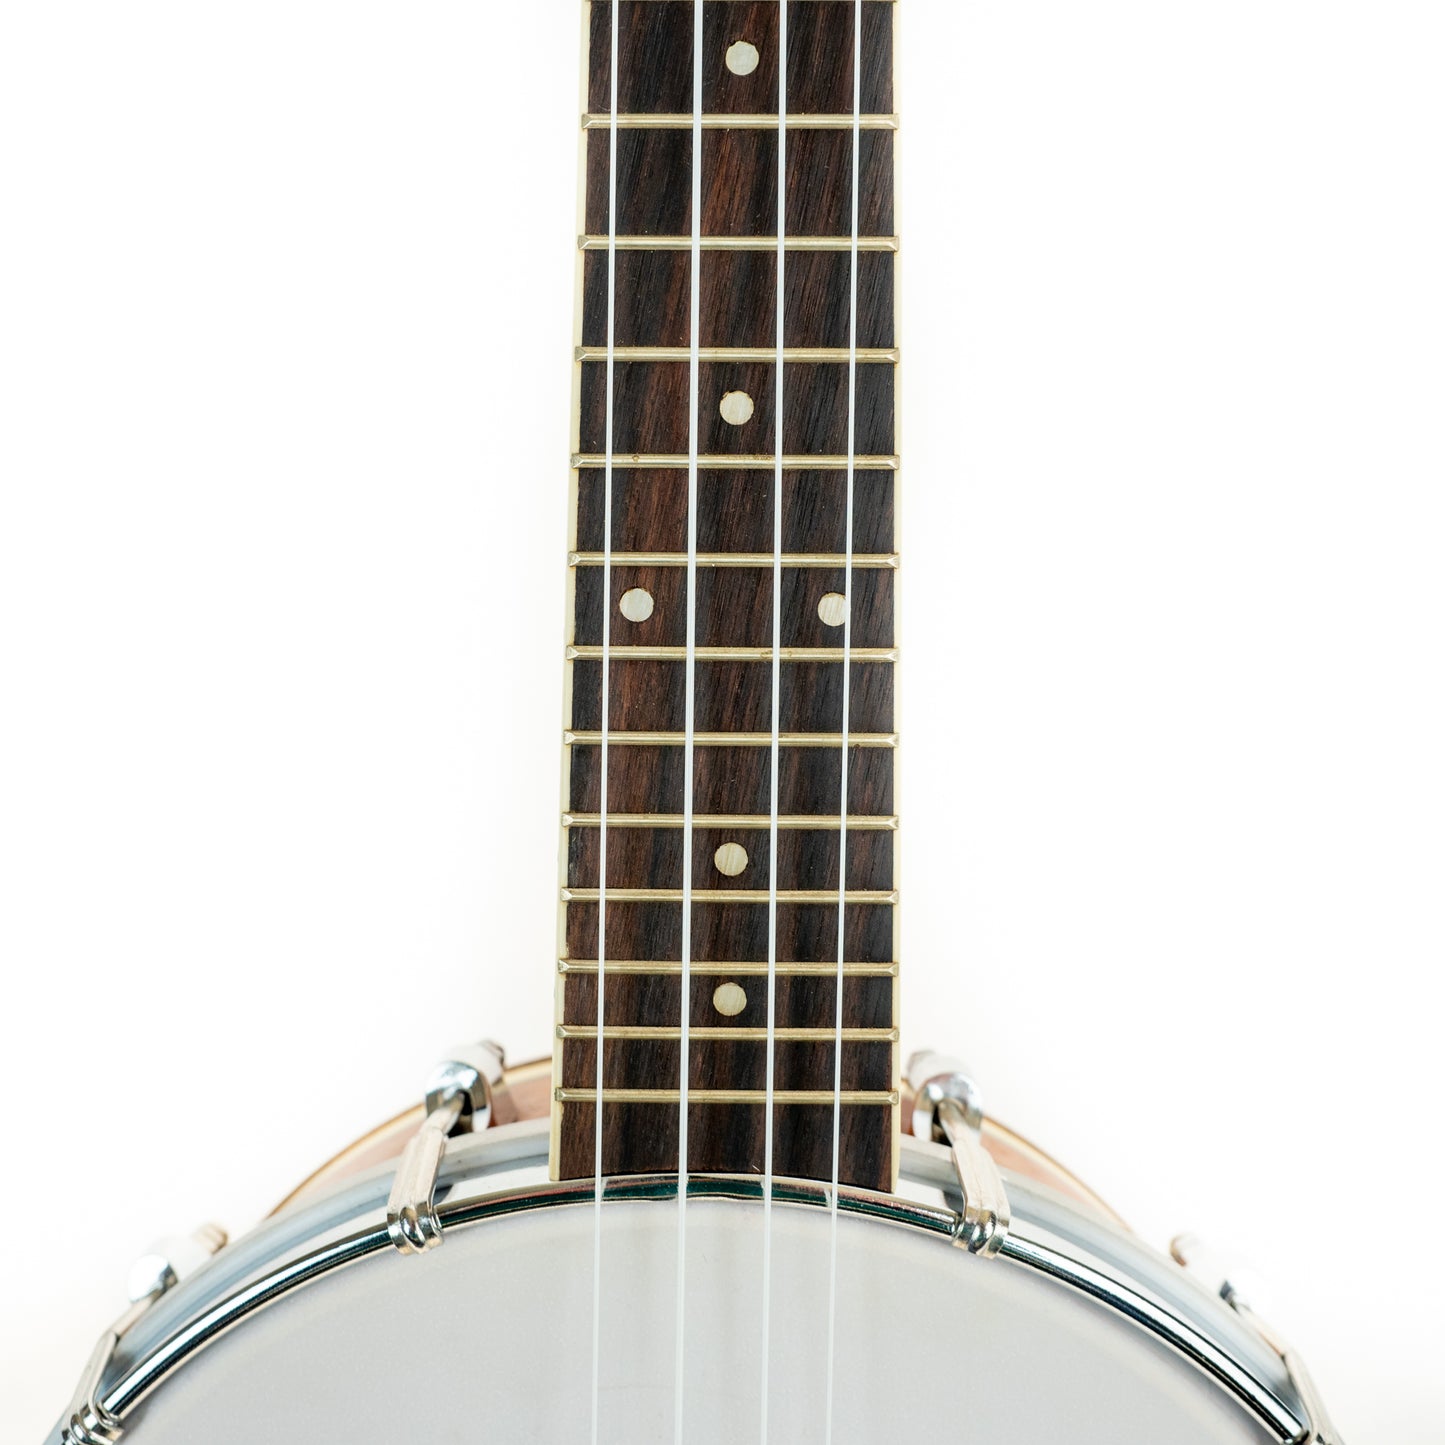 Kala Concert Banjo Ukulele with padded Fender gigbag